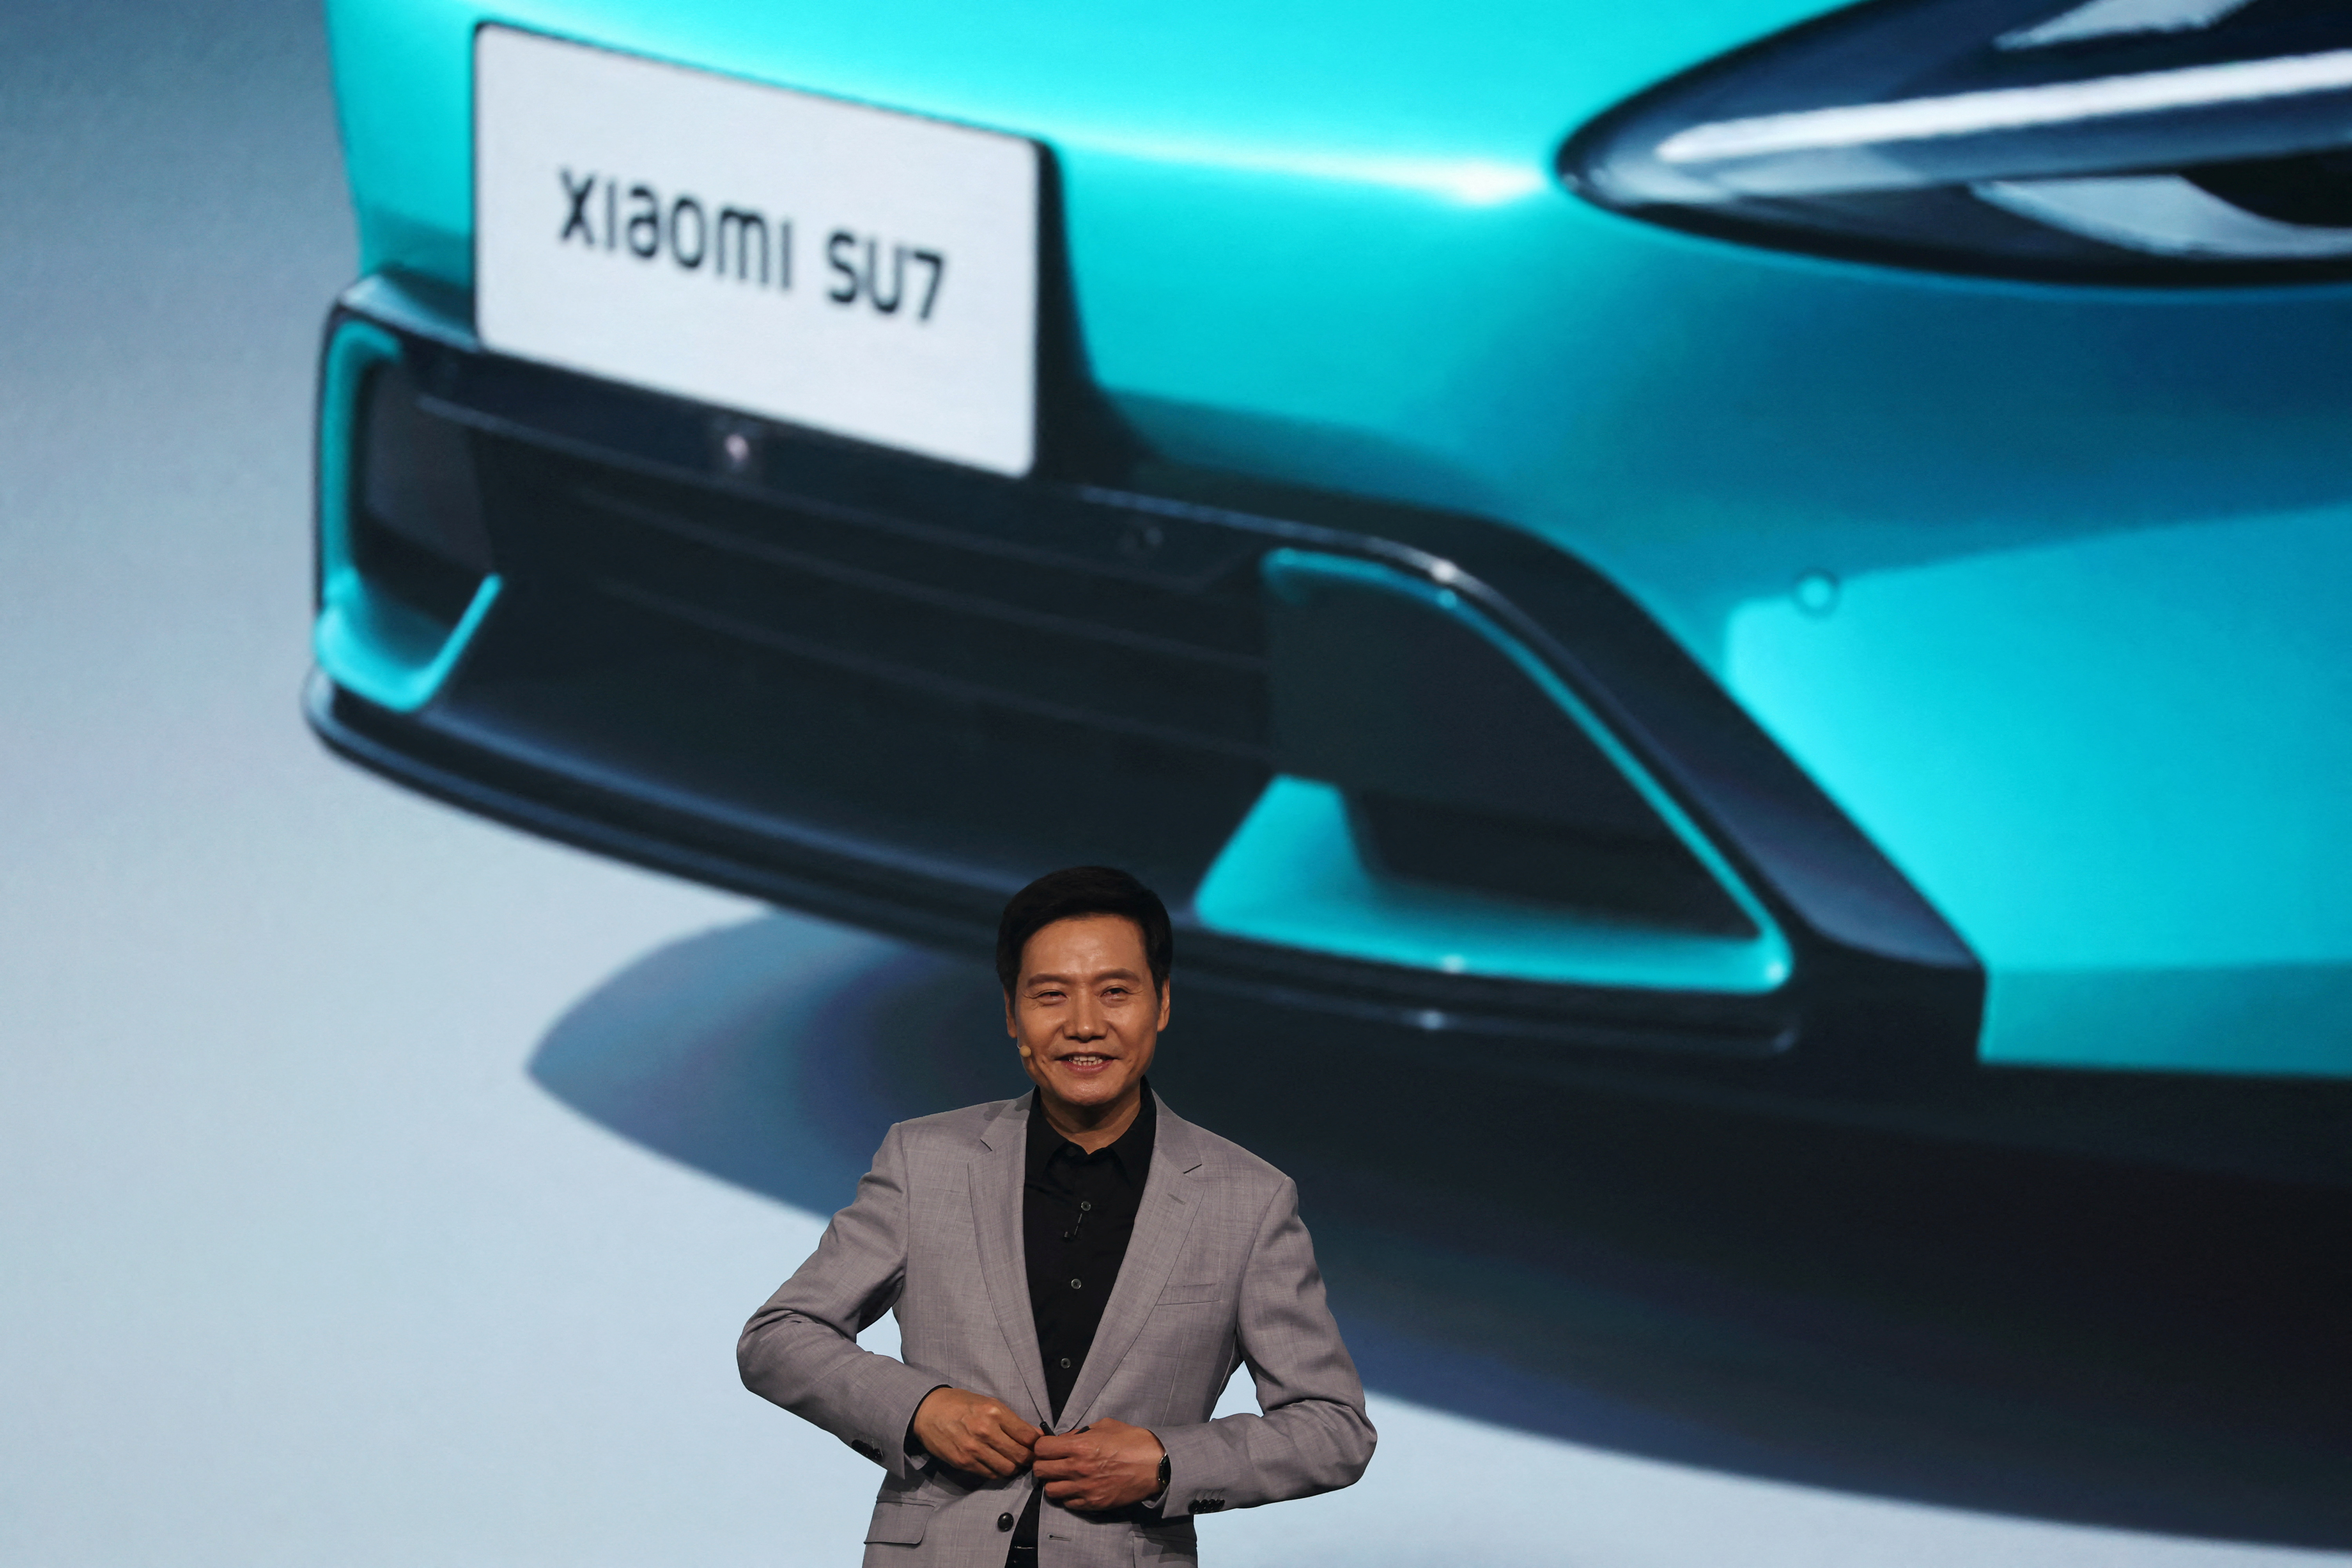 Der CEO von Xiaomi sagte bei einer Veranstaltung, das Unternehmen habe ehrgeizige Pläne, die Automobilindustrie aufzurütteln